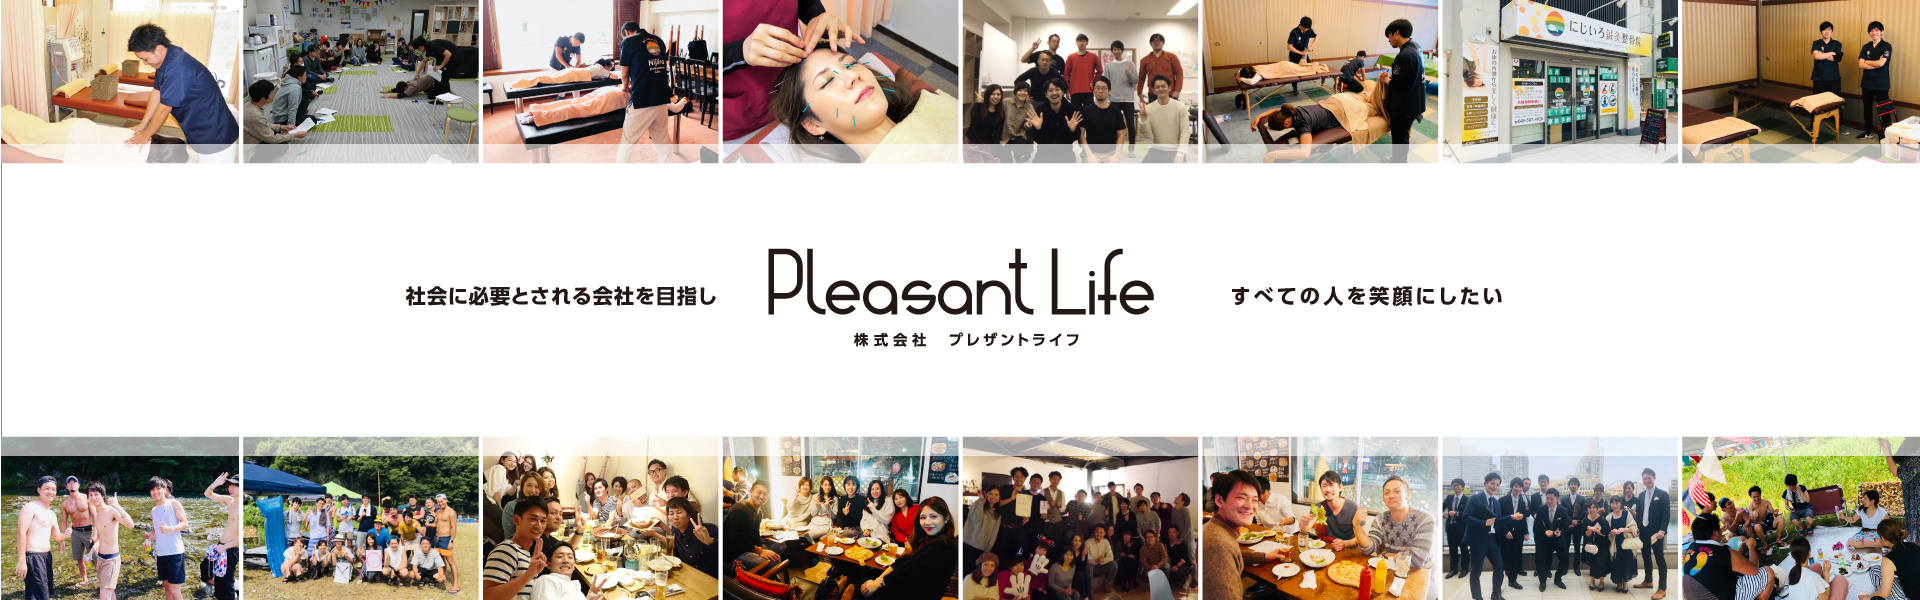 株式会社Pleasant life